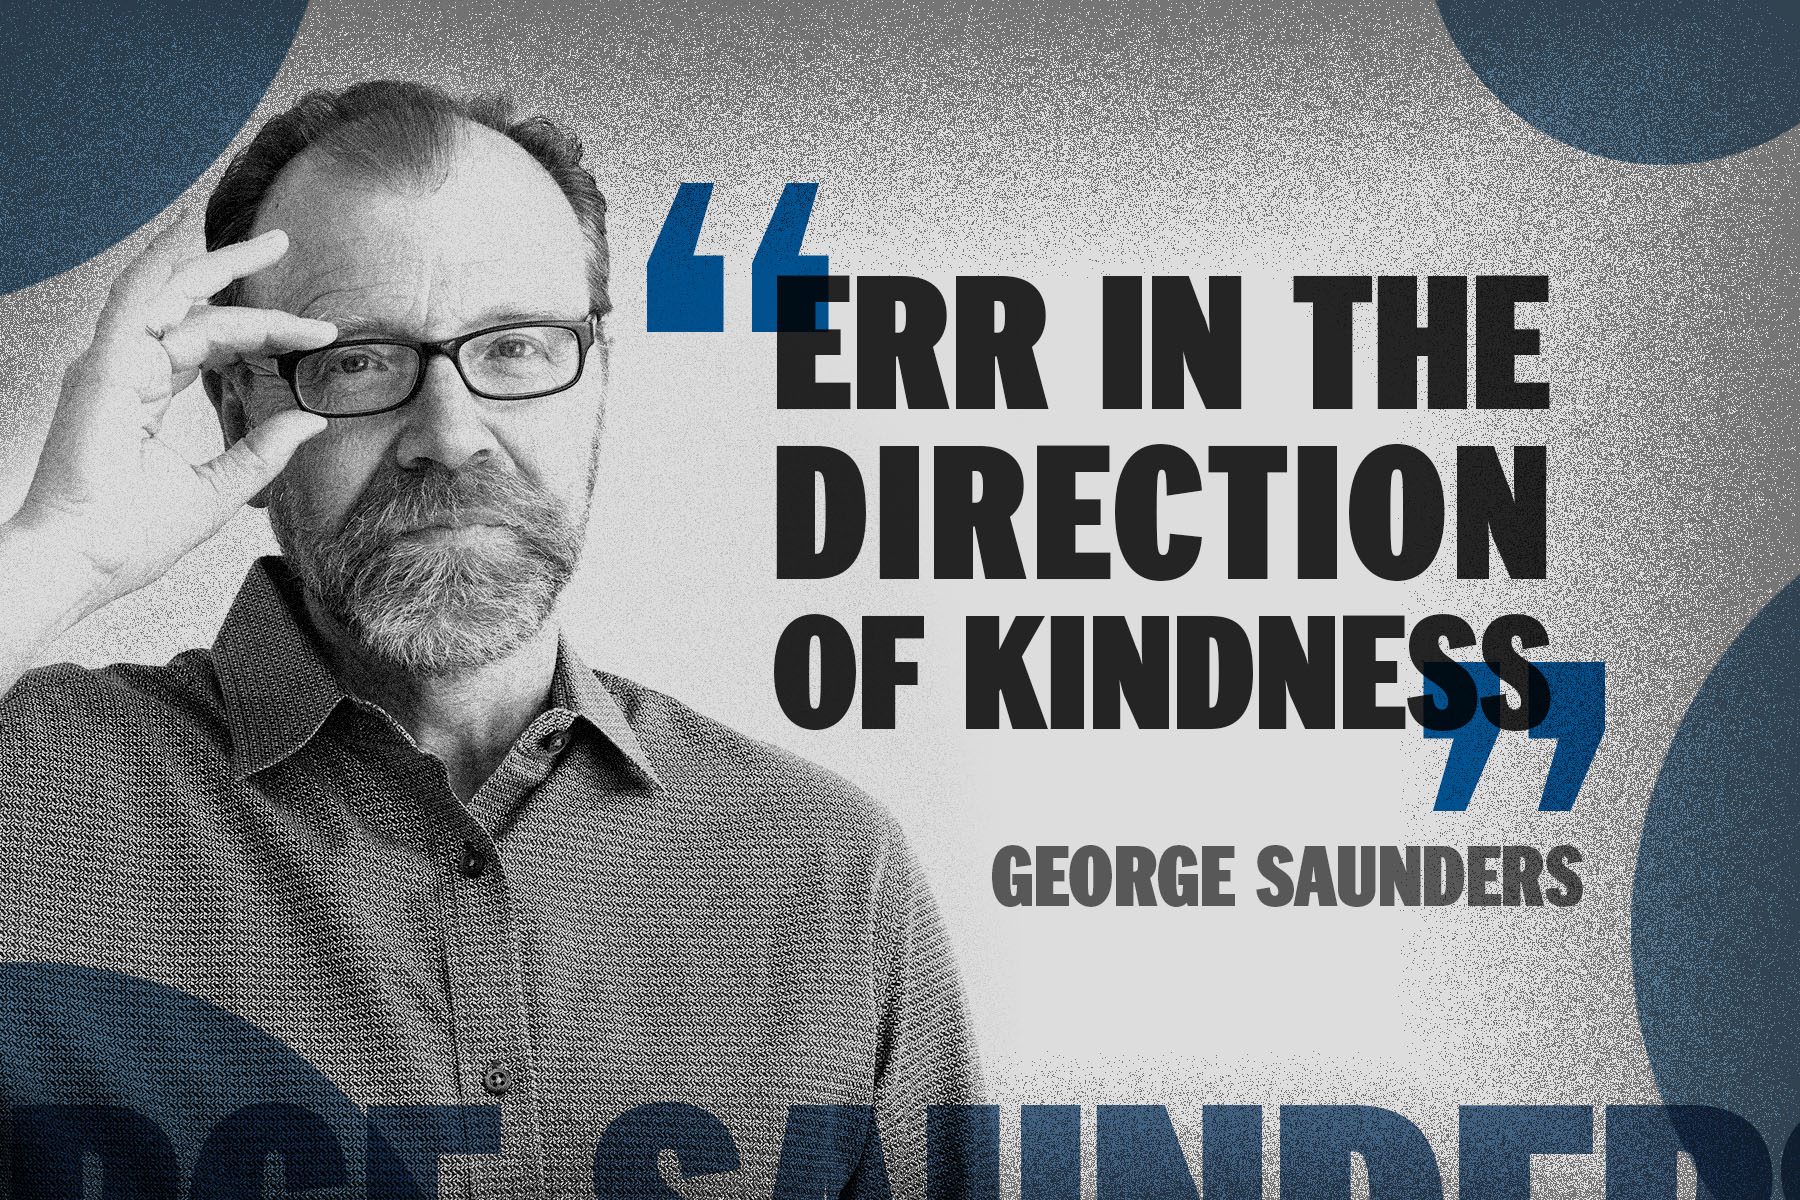 George Saunders